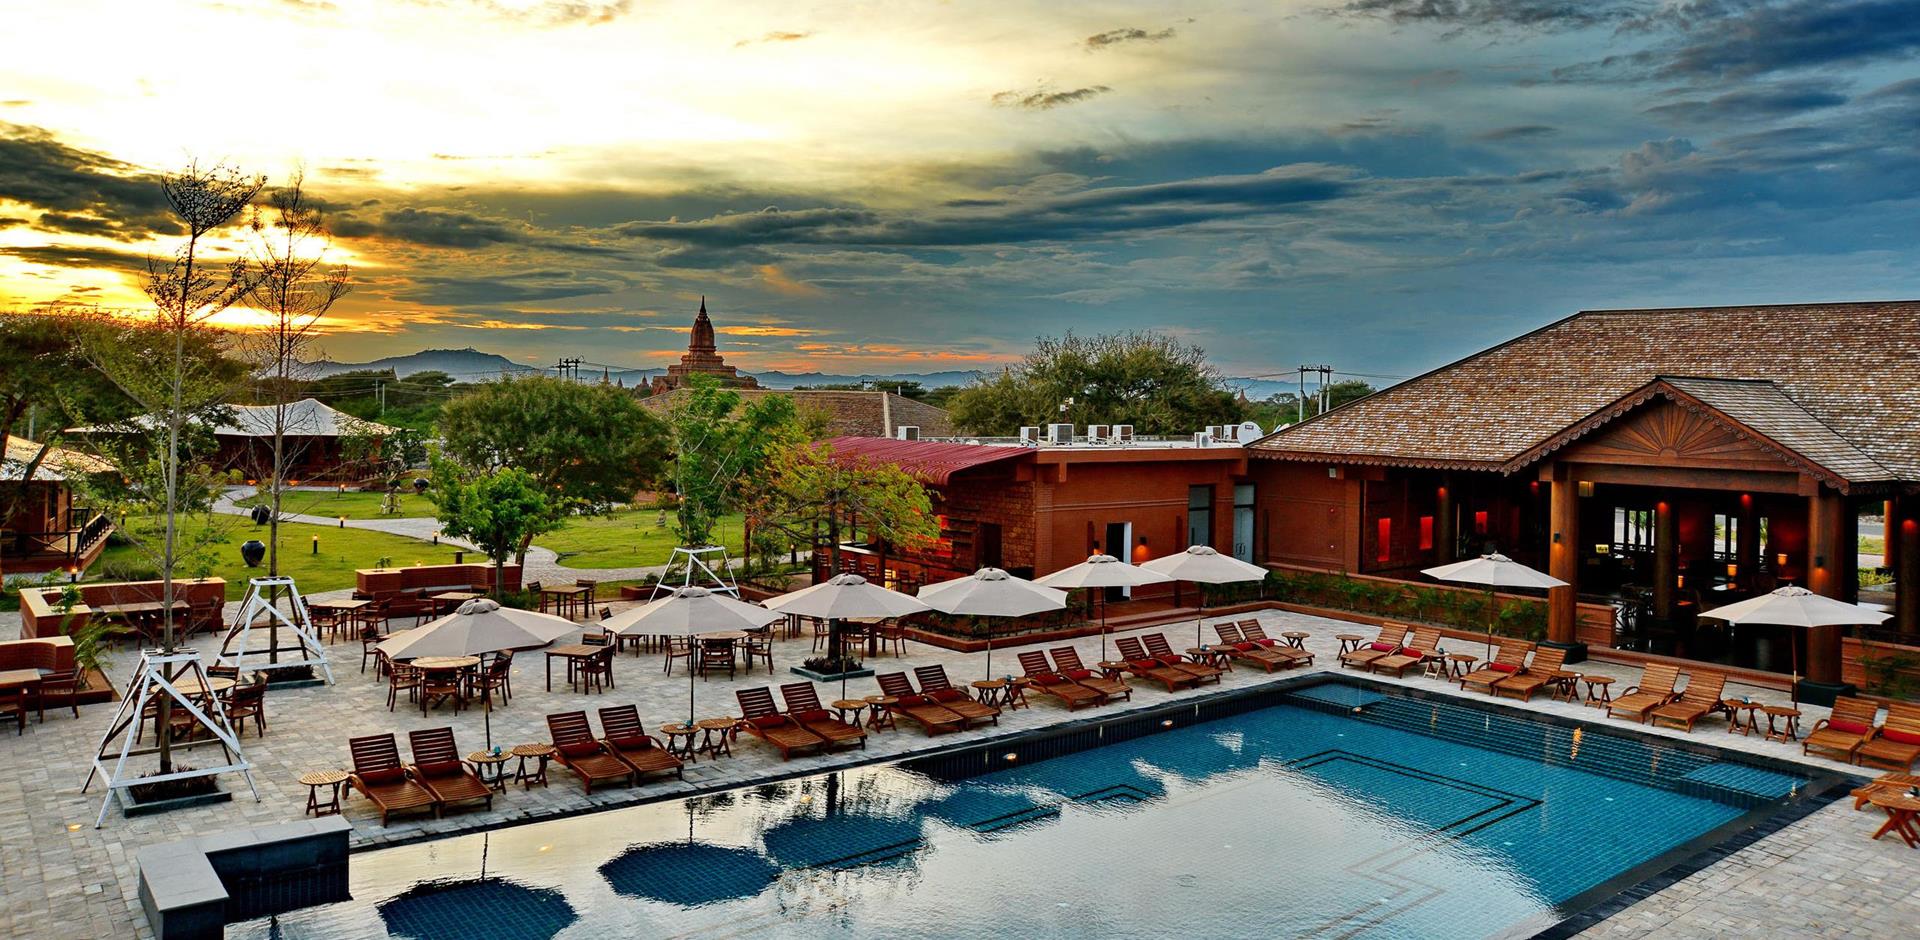 Pool and exterior, Bagan Lodge, Myanmar